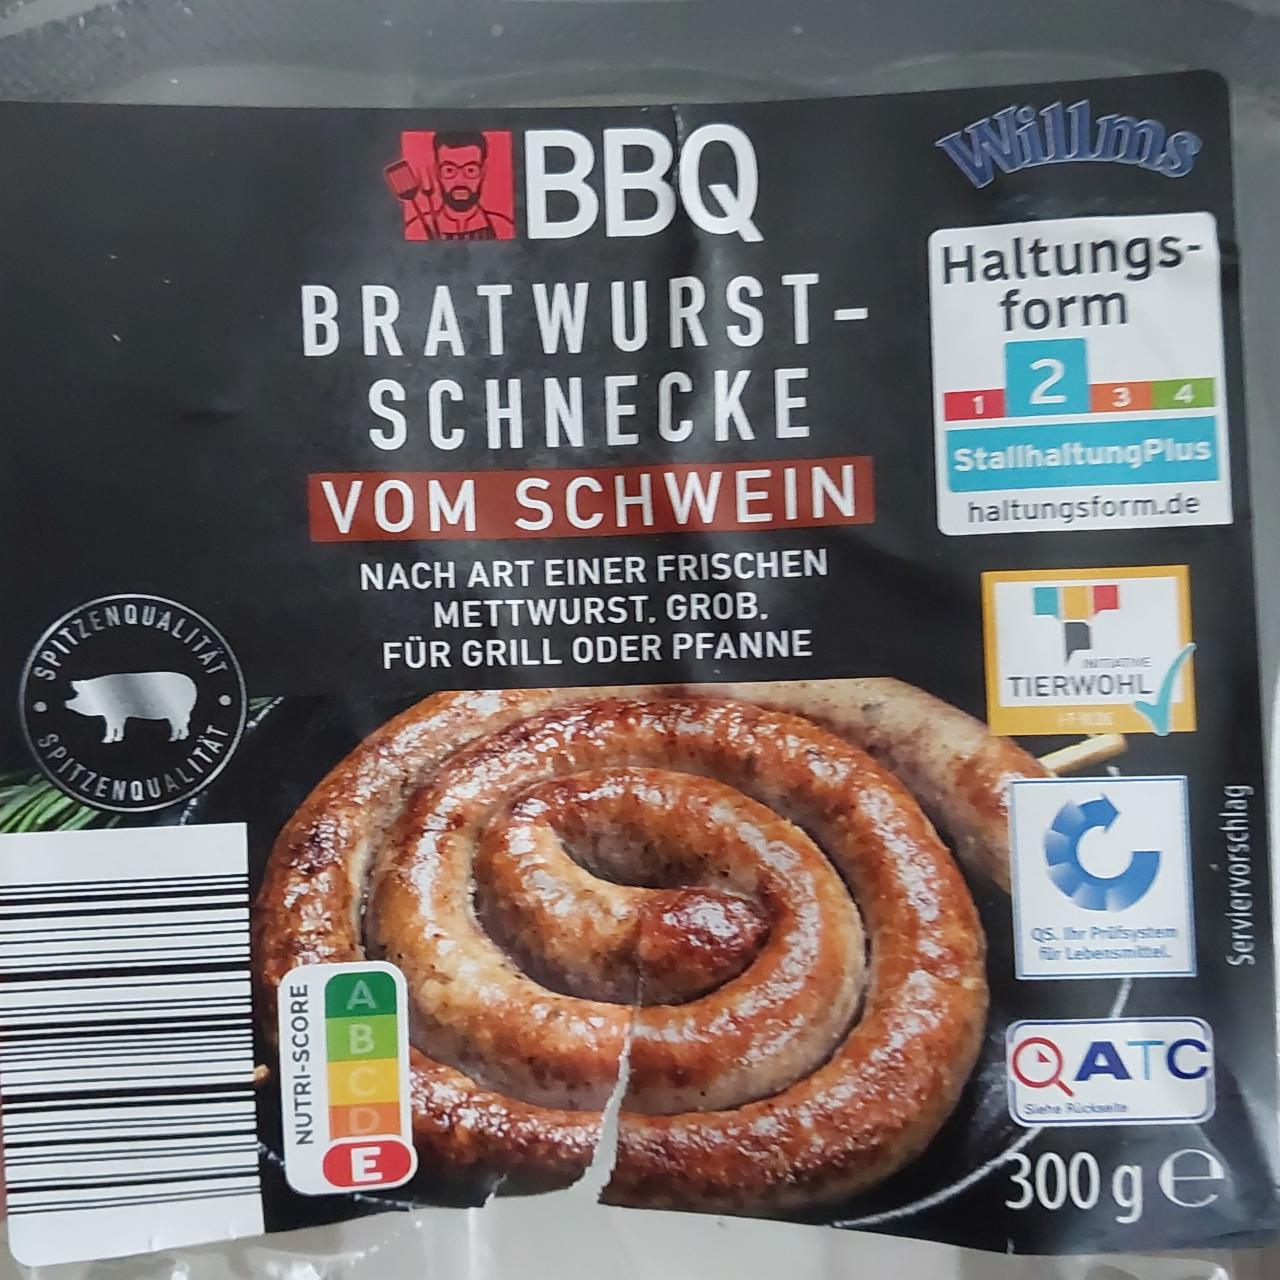 Fotografie - Bratwurst-Schnecke vom Schwein BBQ